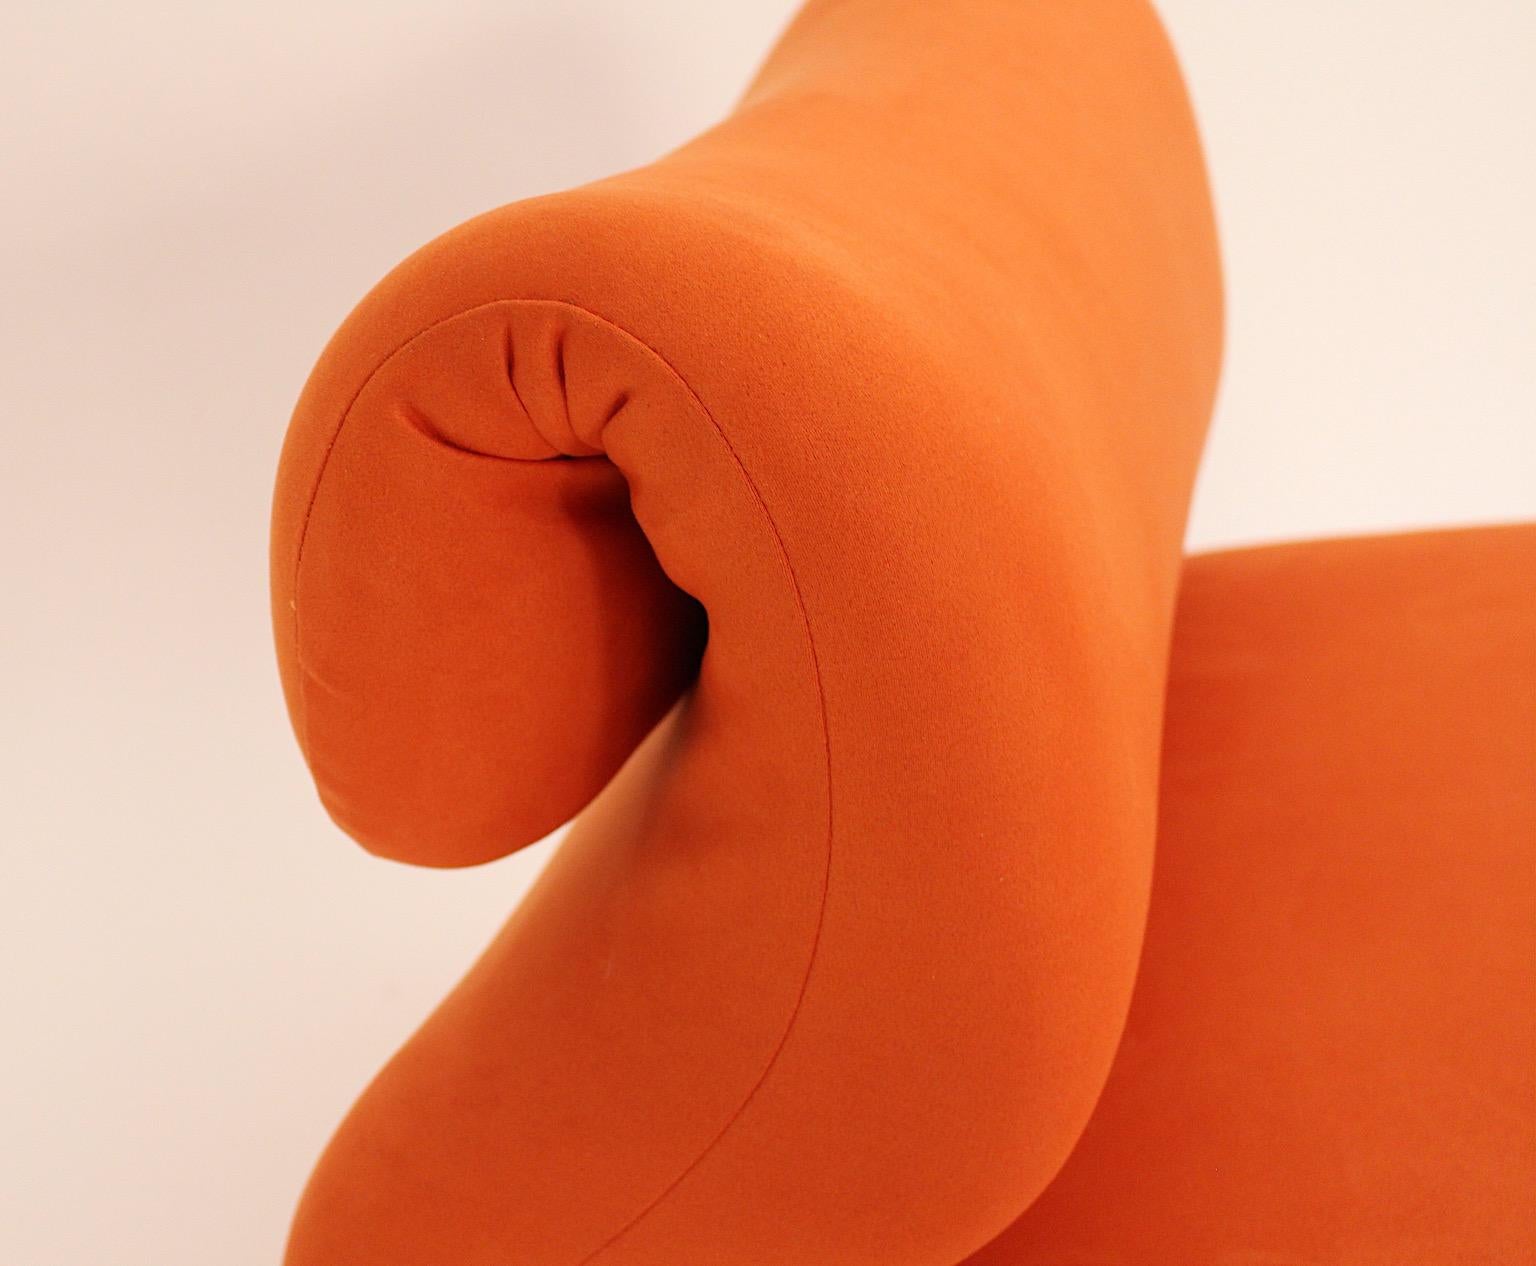 Space Age Vintage Sculptural Orange Etcetera Chair by Jan Ekselius 1970s Sweden 3